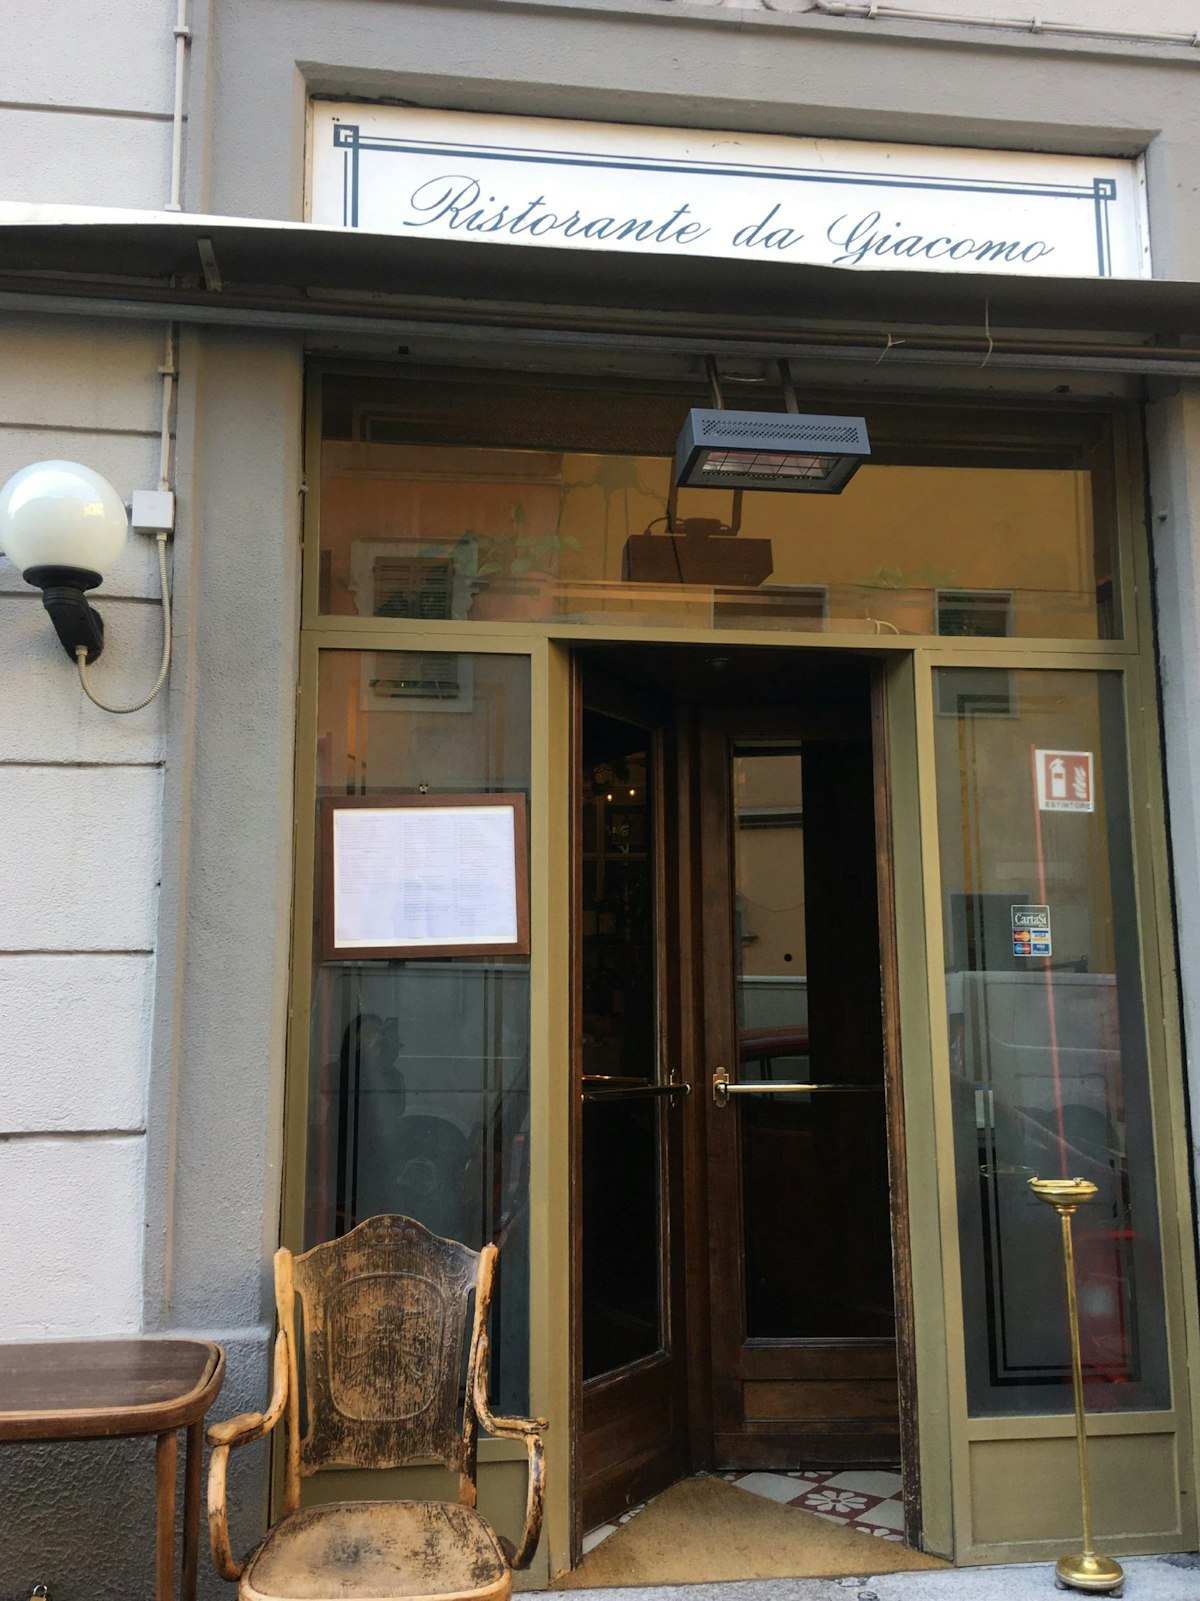 Entrance to Da Giacomo